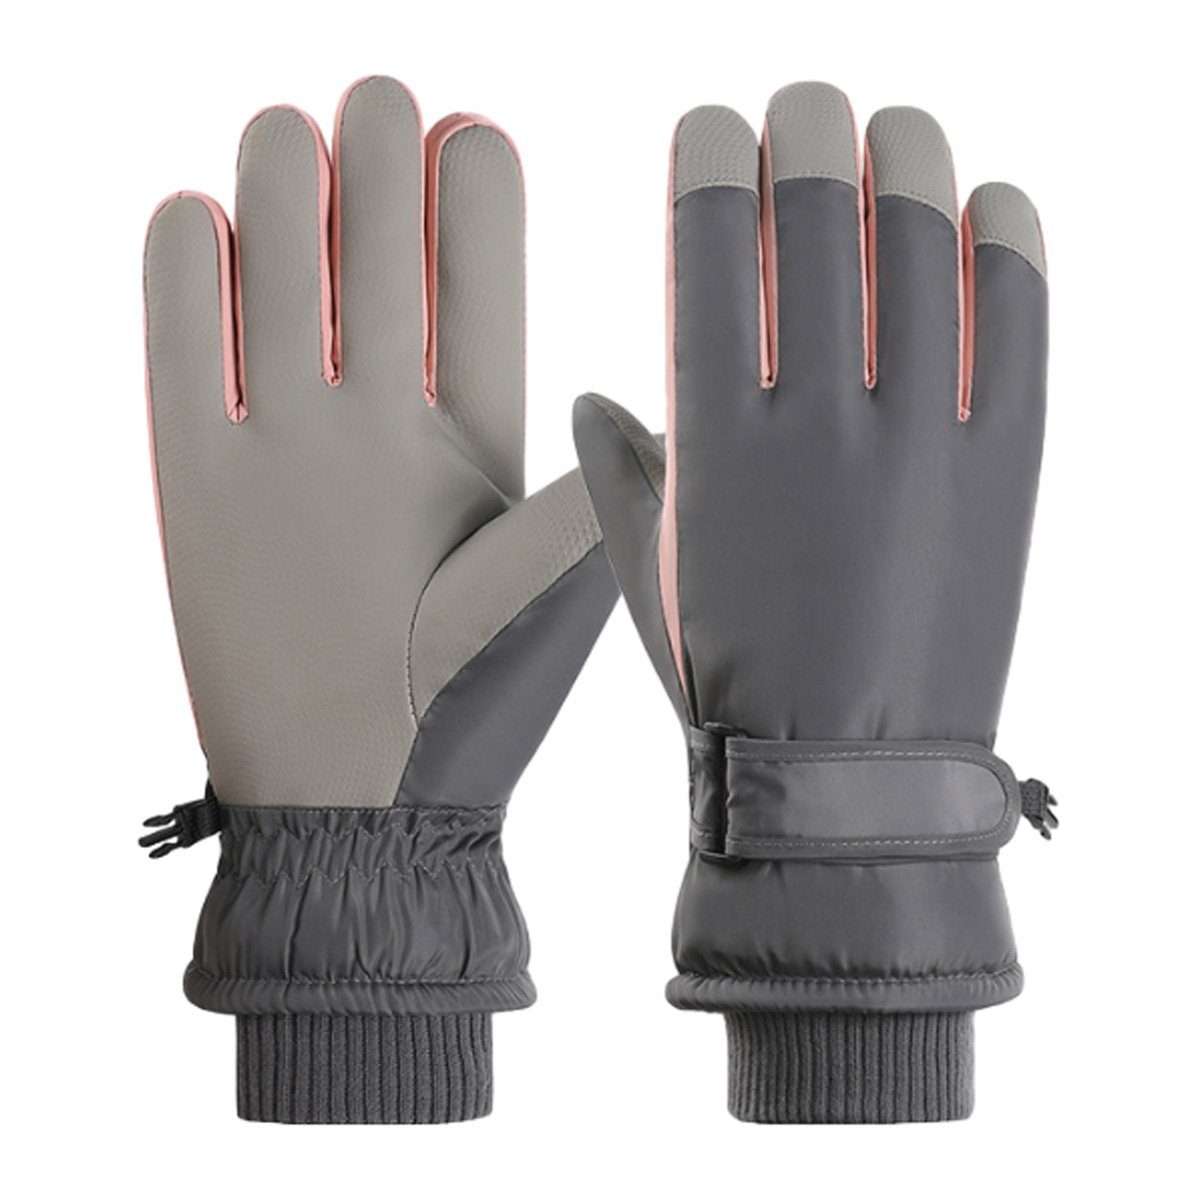 ZmdecQna Skihandschuhe Winterhandschuhe Winter Gloves Touchscreen Fahrradhandschuhe grau2